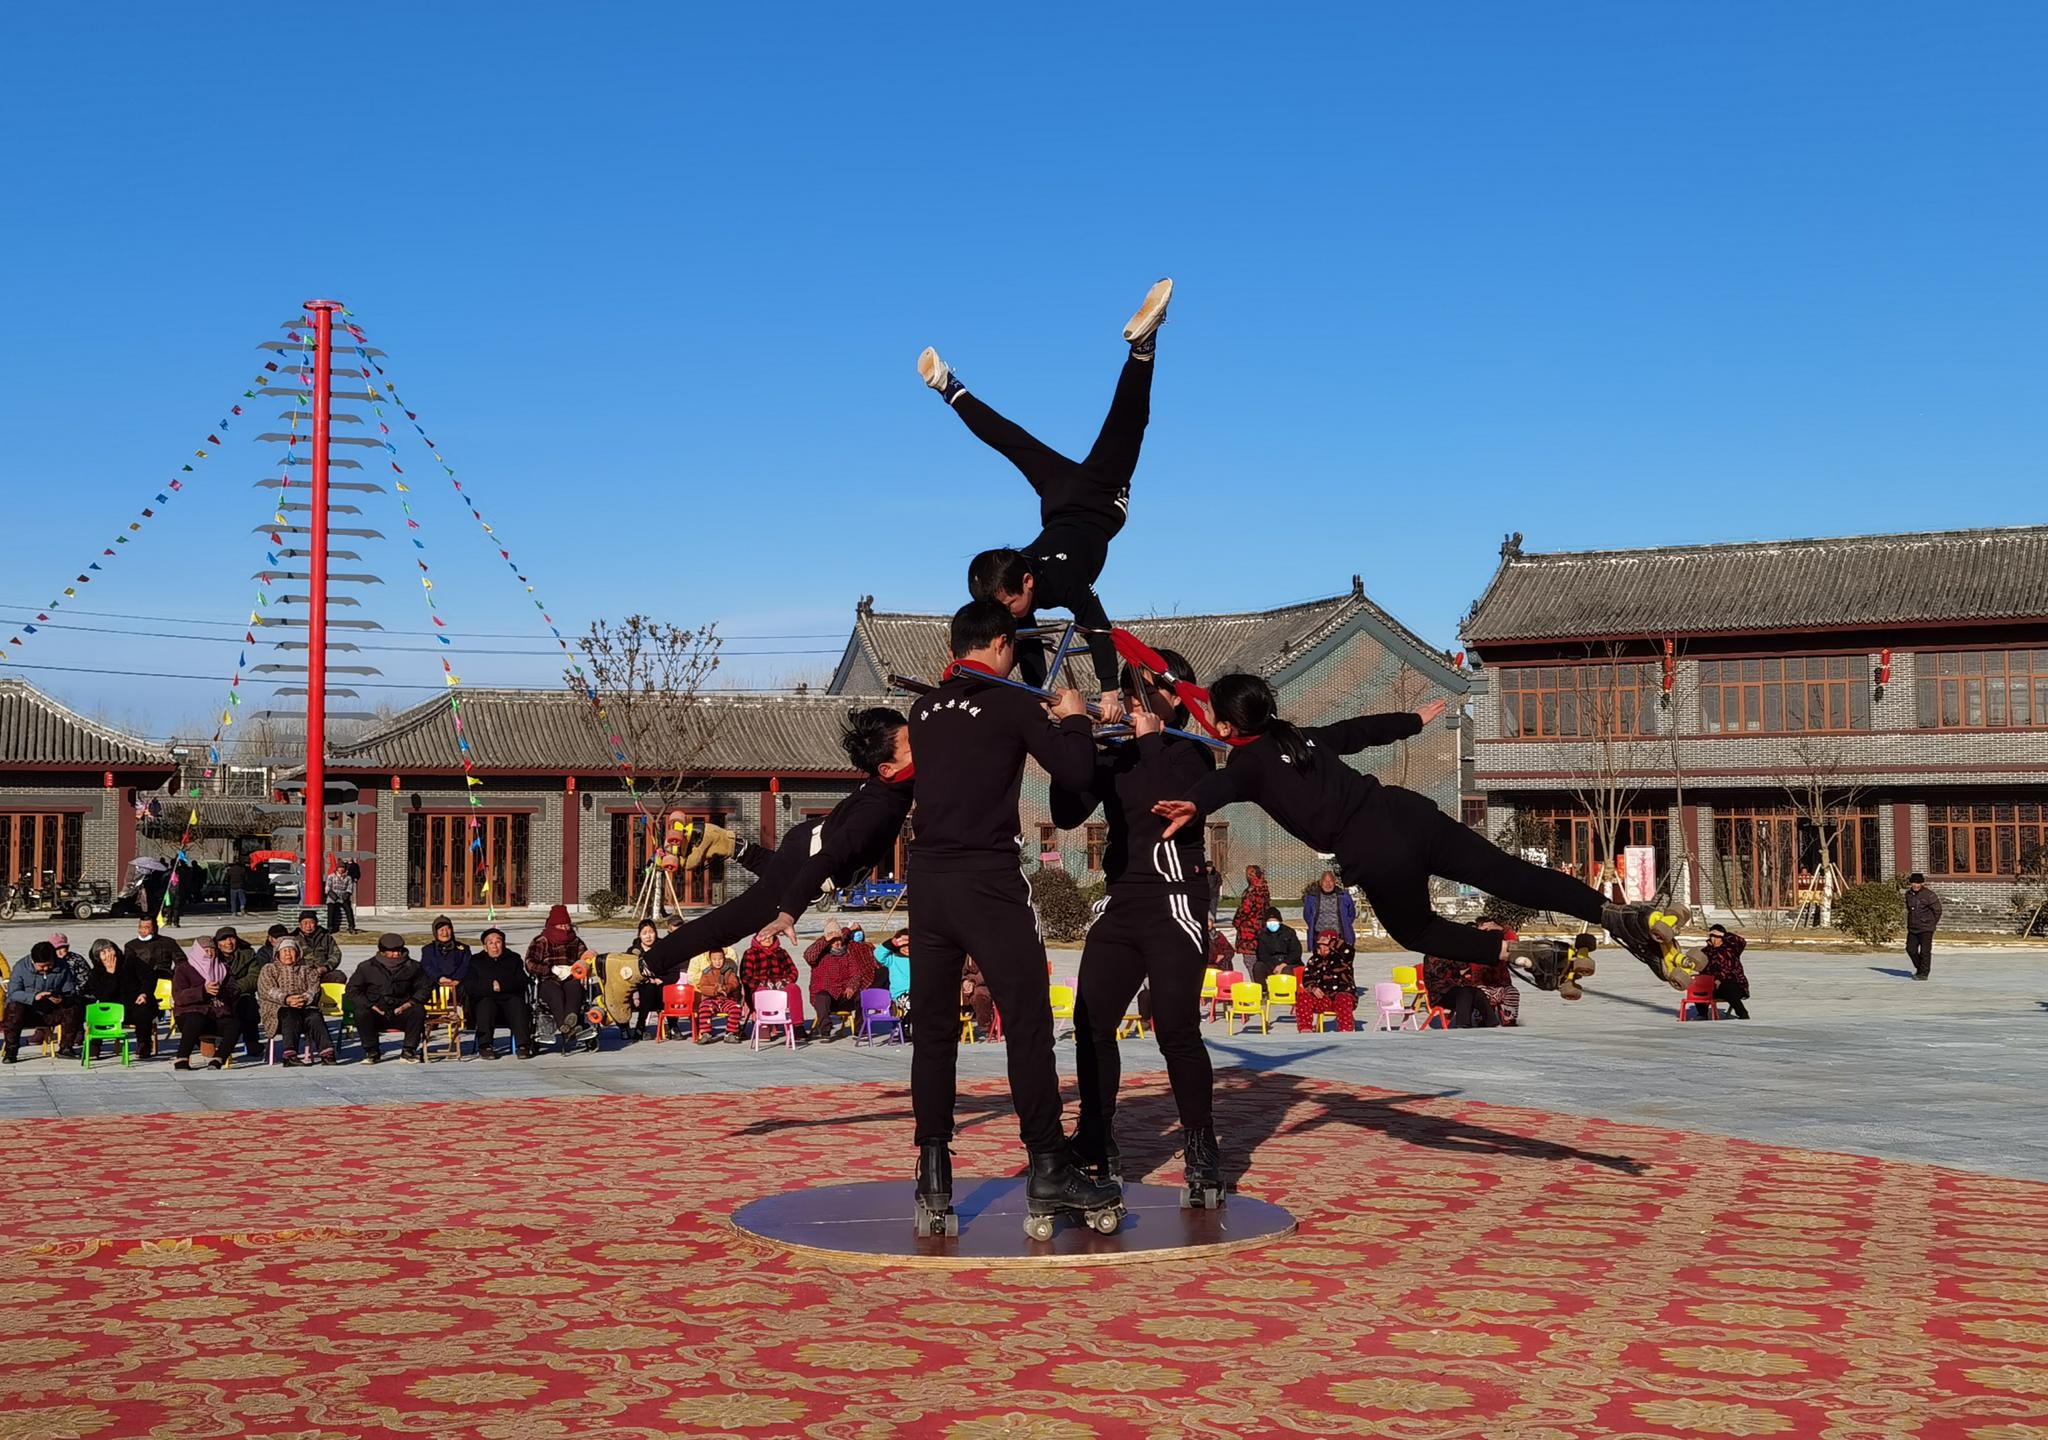 近年来,安徽省阜阳市临泉县把杂技这一在当地延续了数百年的打把式